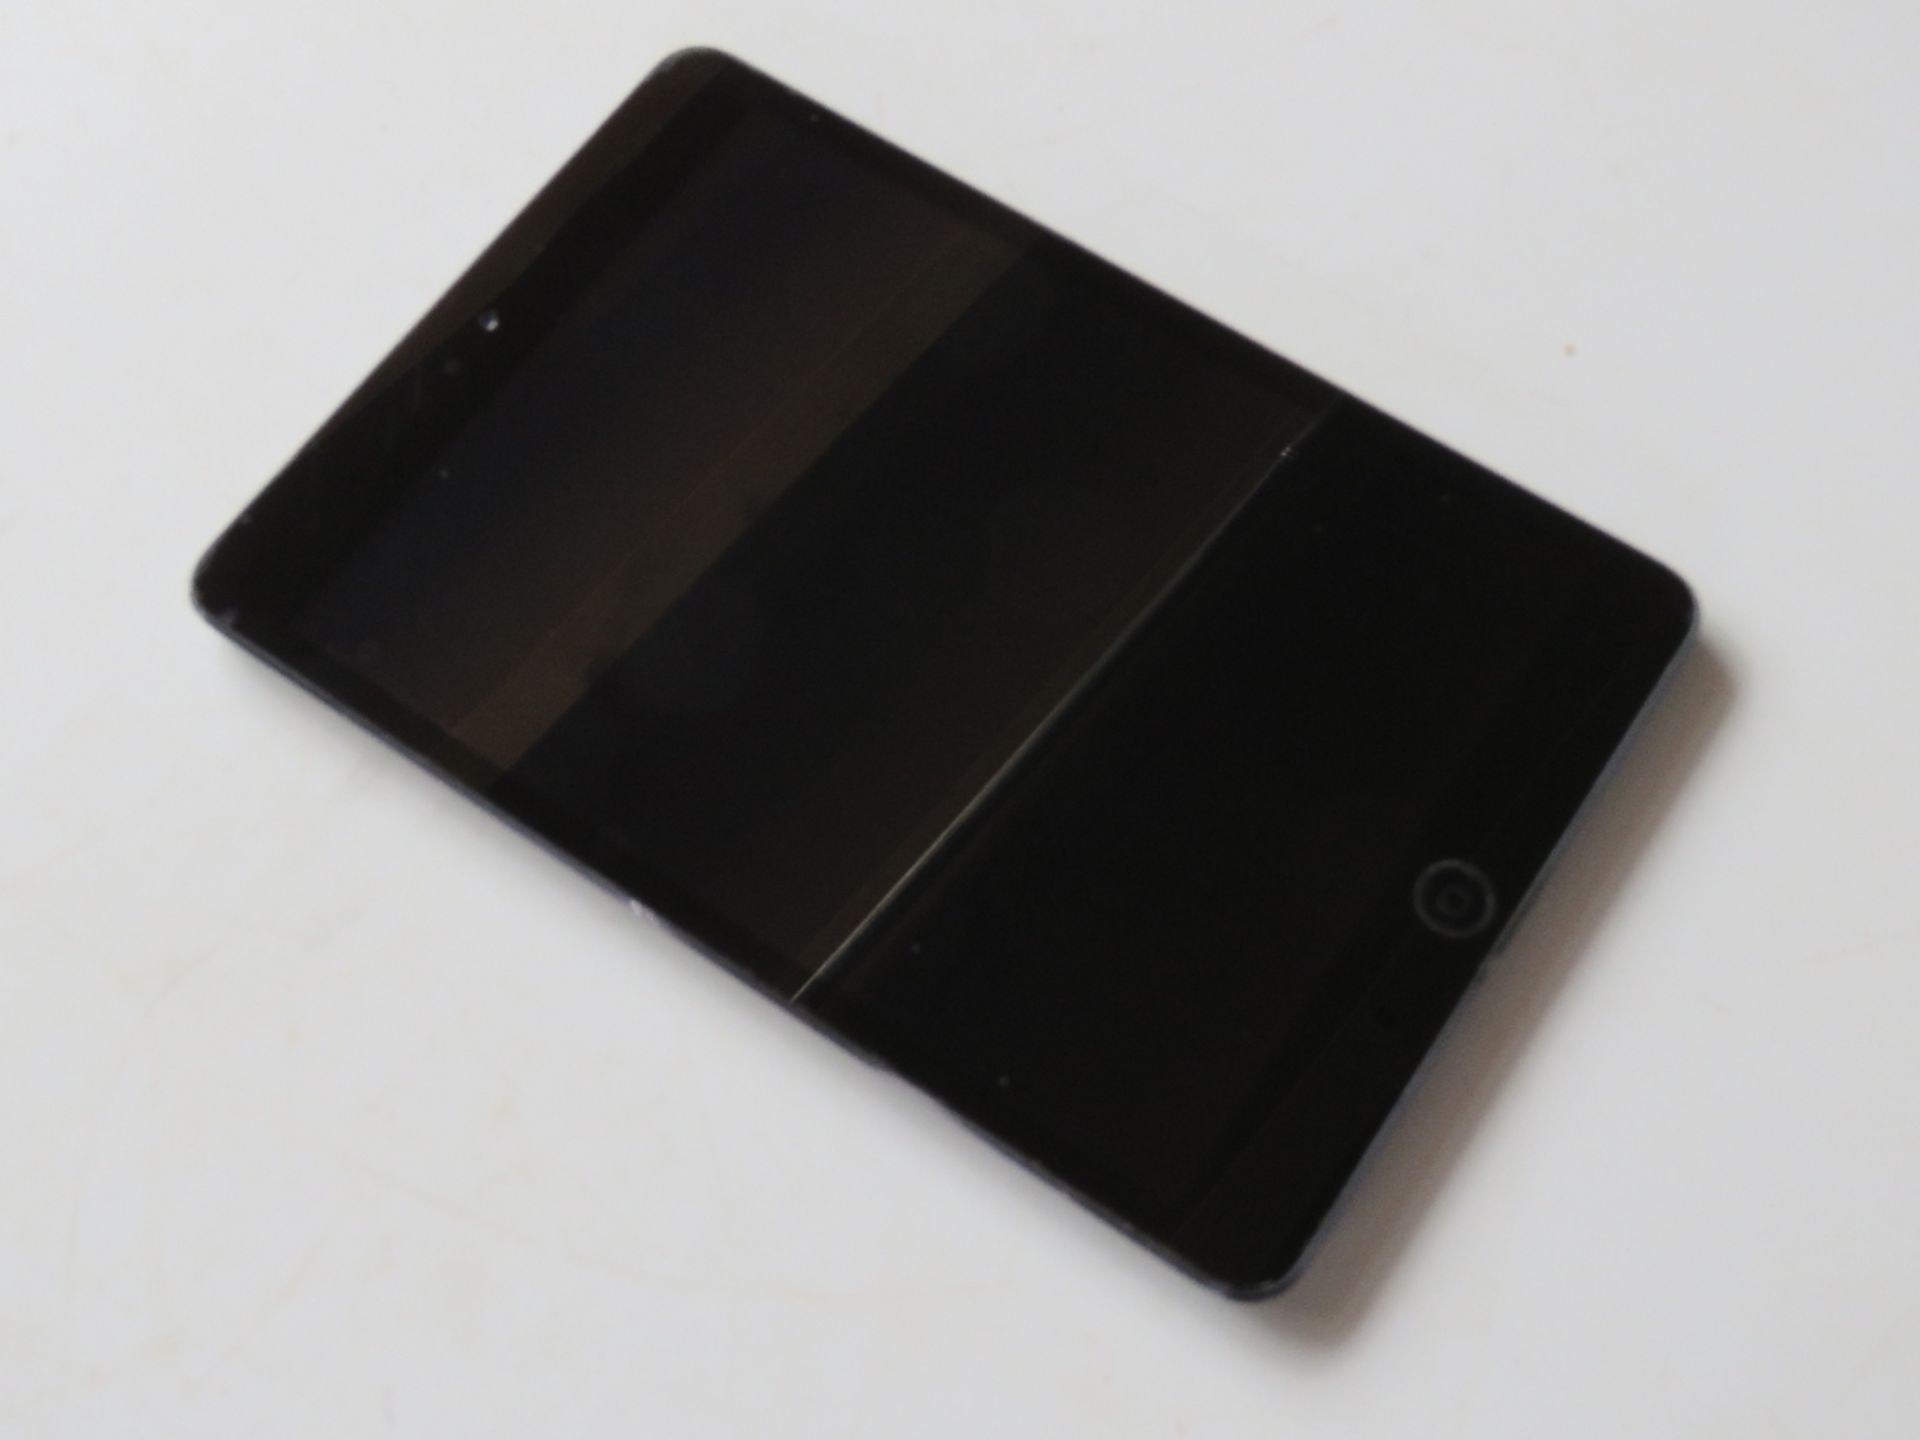 Apple iPad mini in grey model A 1432 7.9" screen. - Image 2 of 12